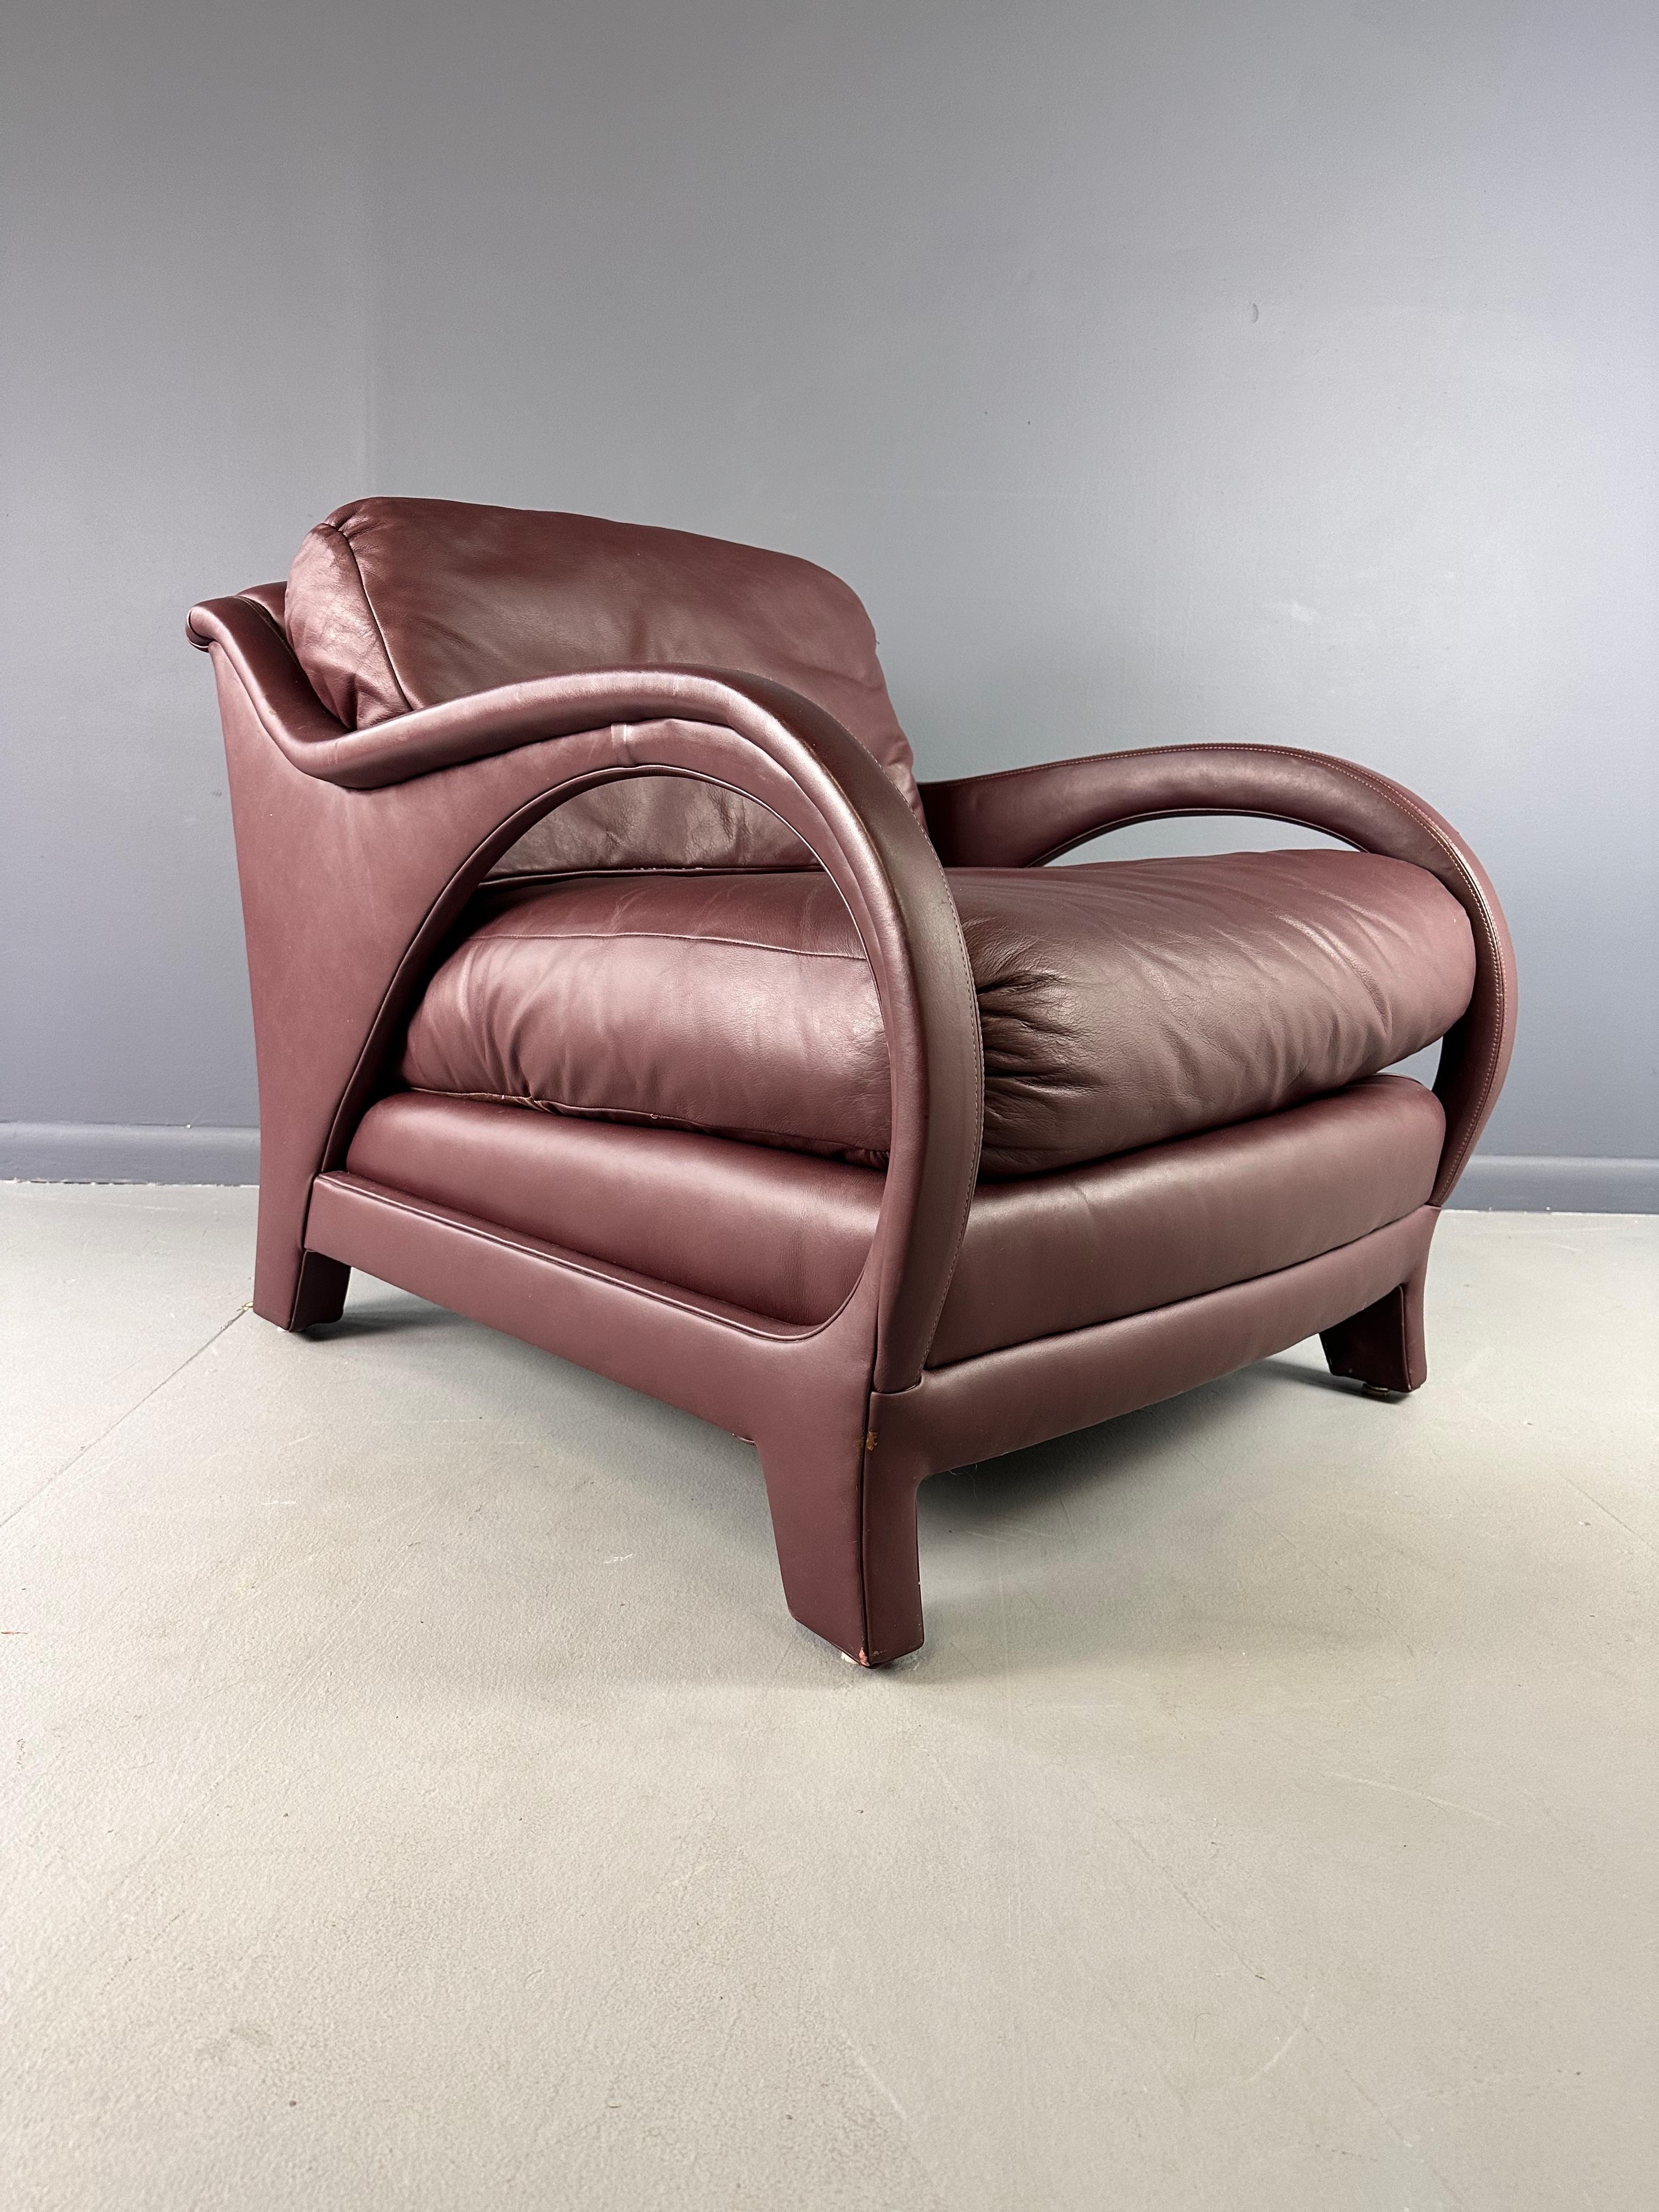 Der Jay Spectre Tycoon Leather Lounge Chair in Burgundy ist die perfekte Ergänzung für jeden gehobenen Wohn- oder Büroraum. Dieser vom renommierten Designer Jay Spectre entworfene Stuhl bietet ein luxuriöses und elegantes Design mit hochwertigem